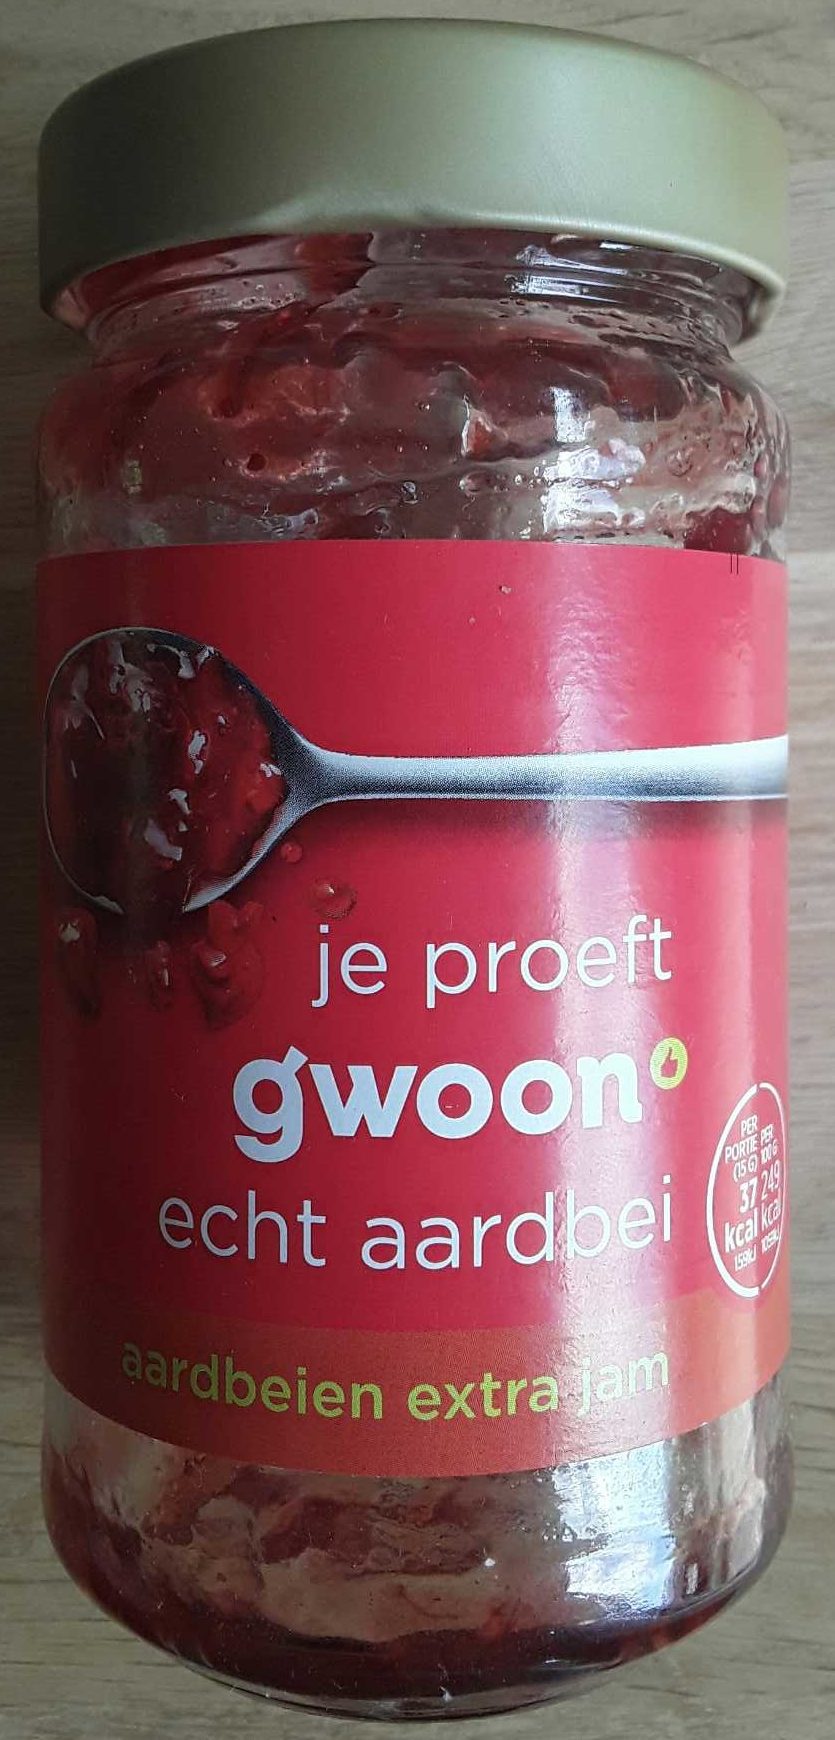 Aardbeien extra jam - Product - nl